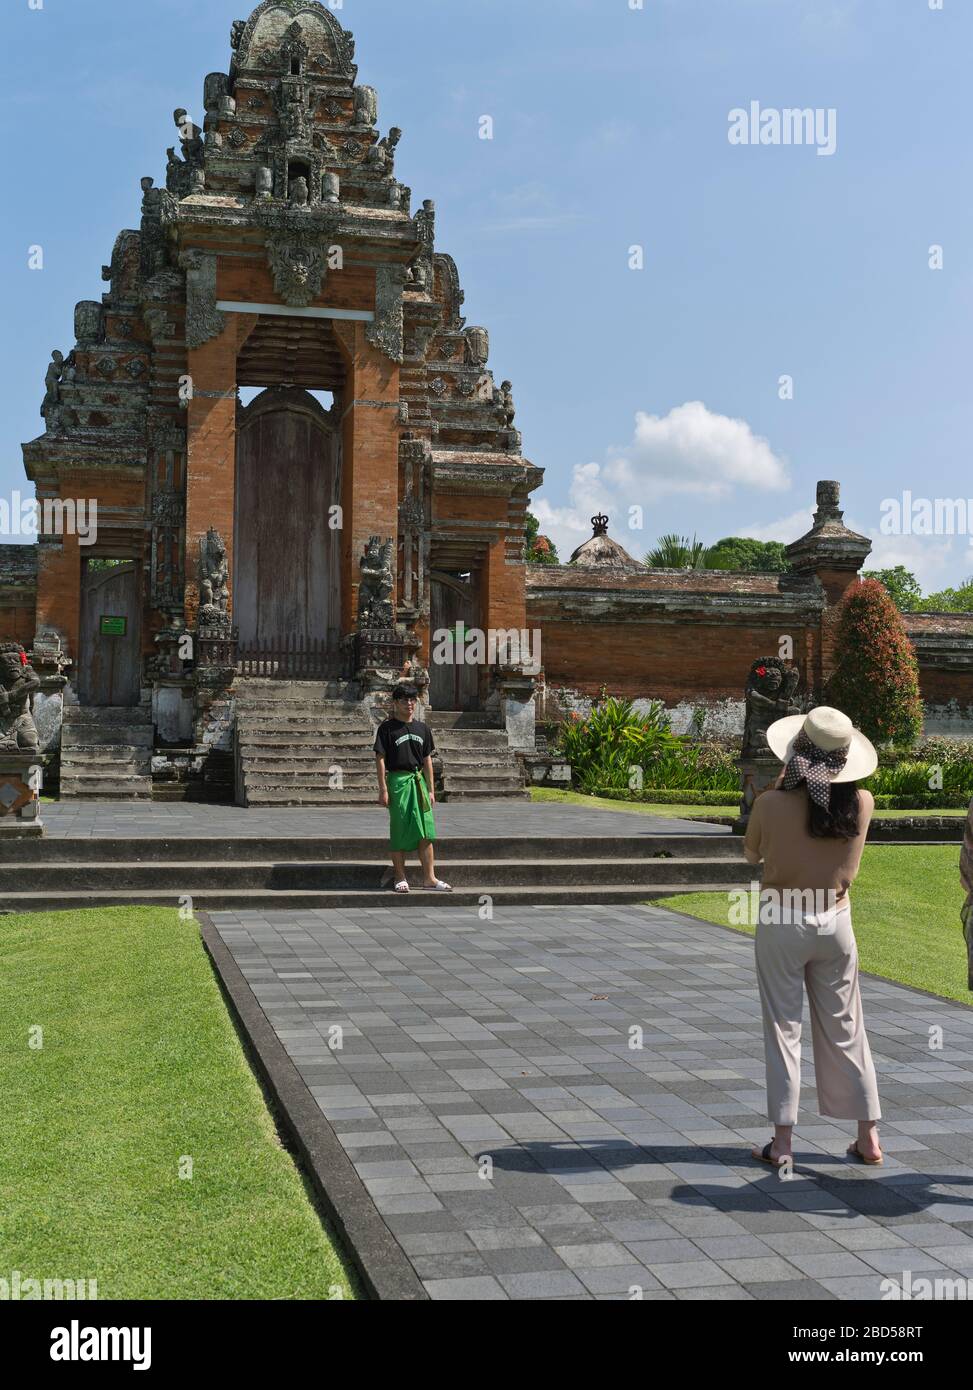 dh Pura Taman Ayun Königlicher Tempel BALI INDONESIEN Touristen fotografieren Balinesische Hindu Mengwi Tempel Paduraksa Architektur hinduismus Tor Sightseeing Stockfoto